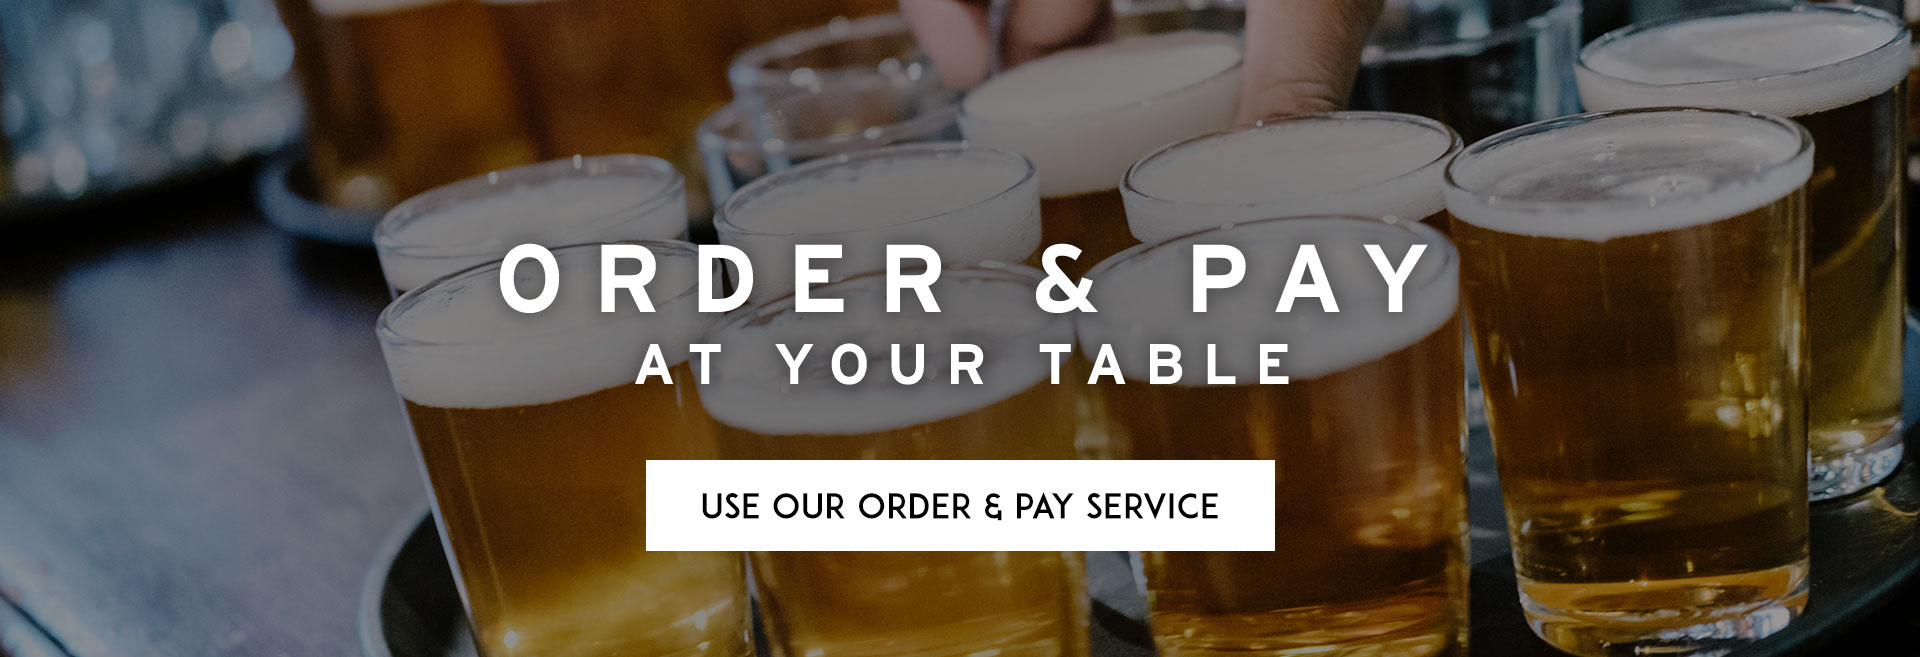 Order at table at The Railway Tavern hero